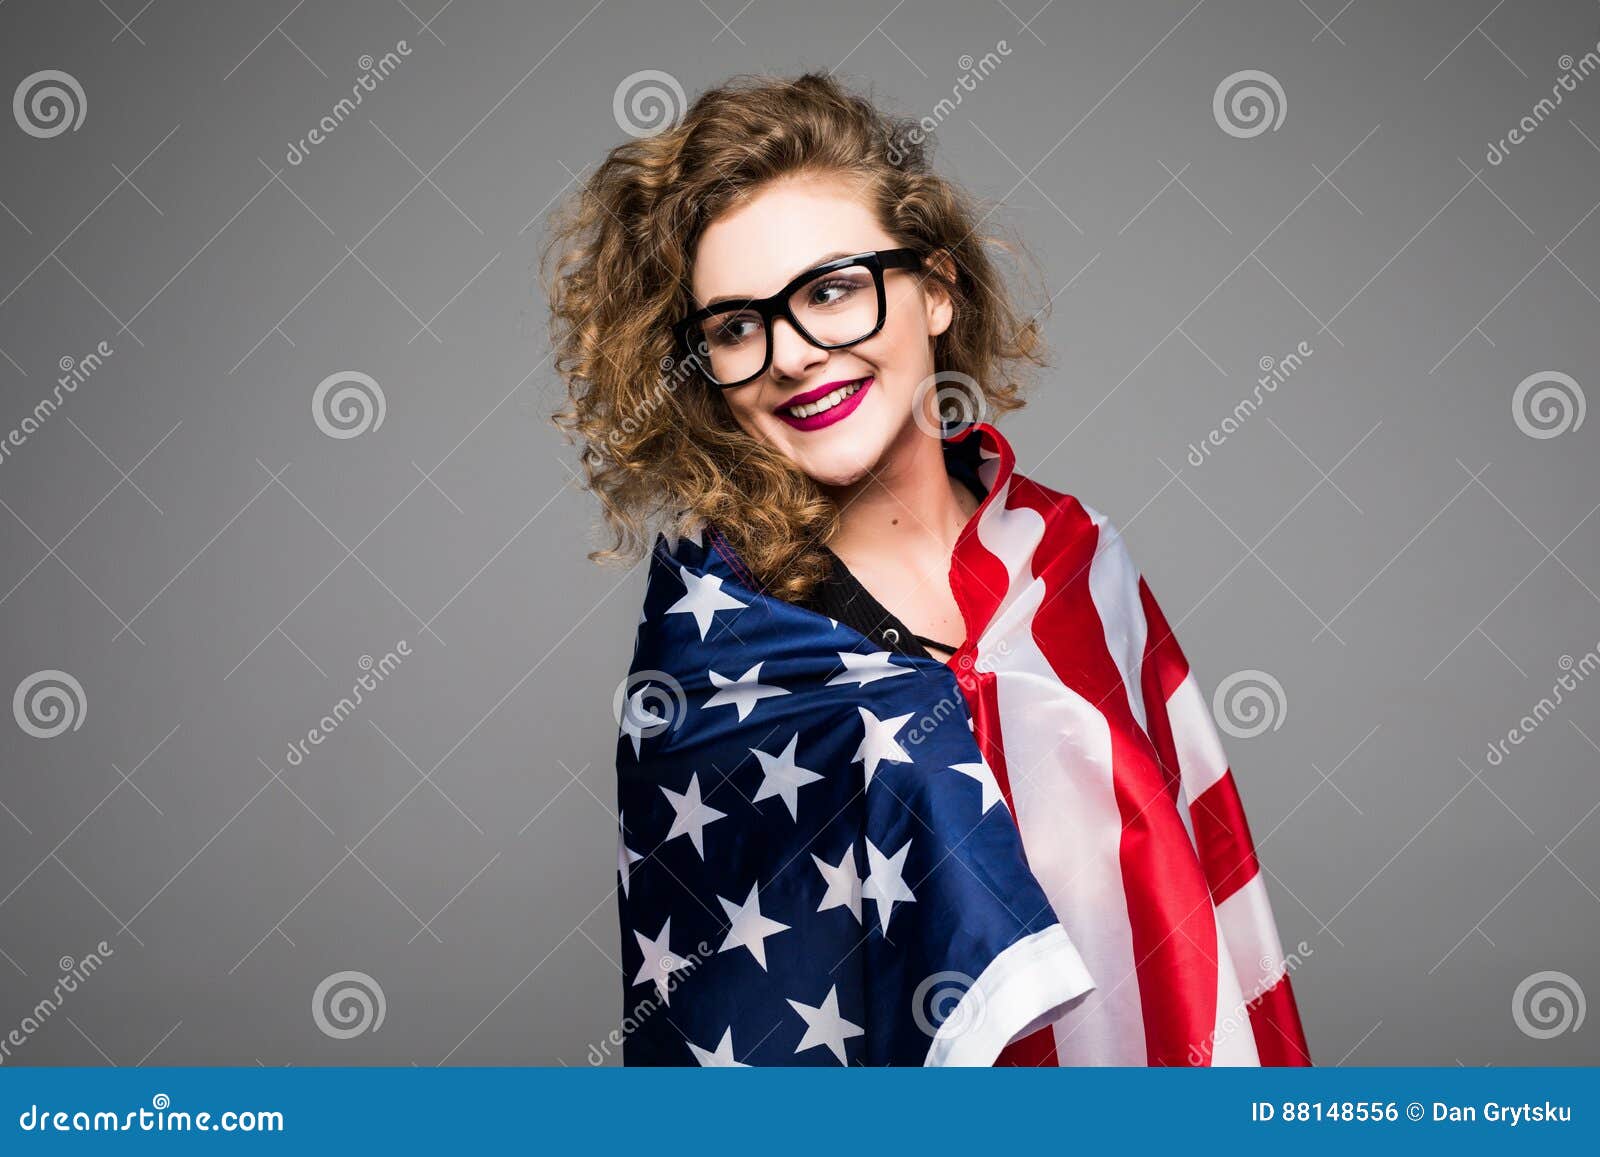 Cubren a La Mujer Joven Alegre En Ropa Casual Y Vidrios En La Bandera Americana Y La Sonrisa En Fondo Gris Foto archivo - Imagen de negocios, belleza: 88148556